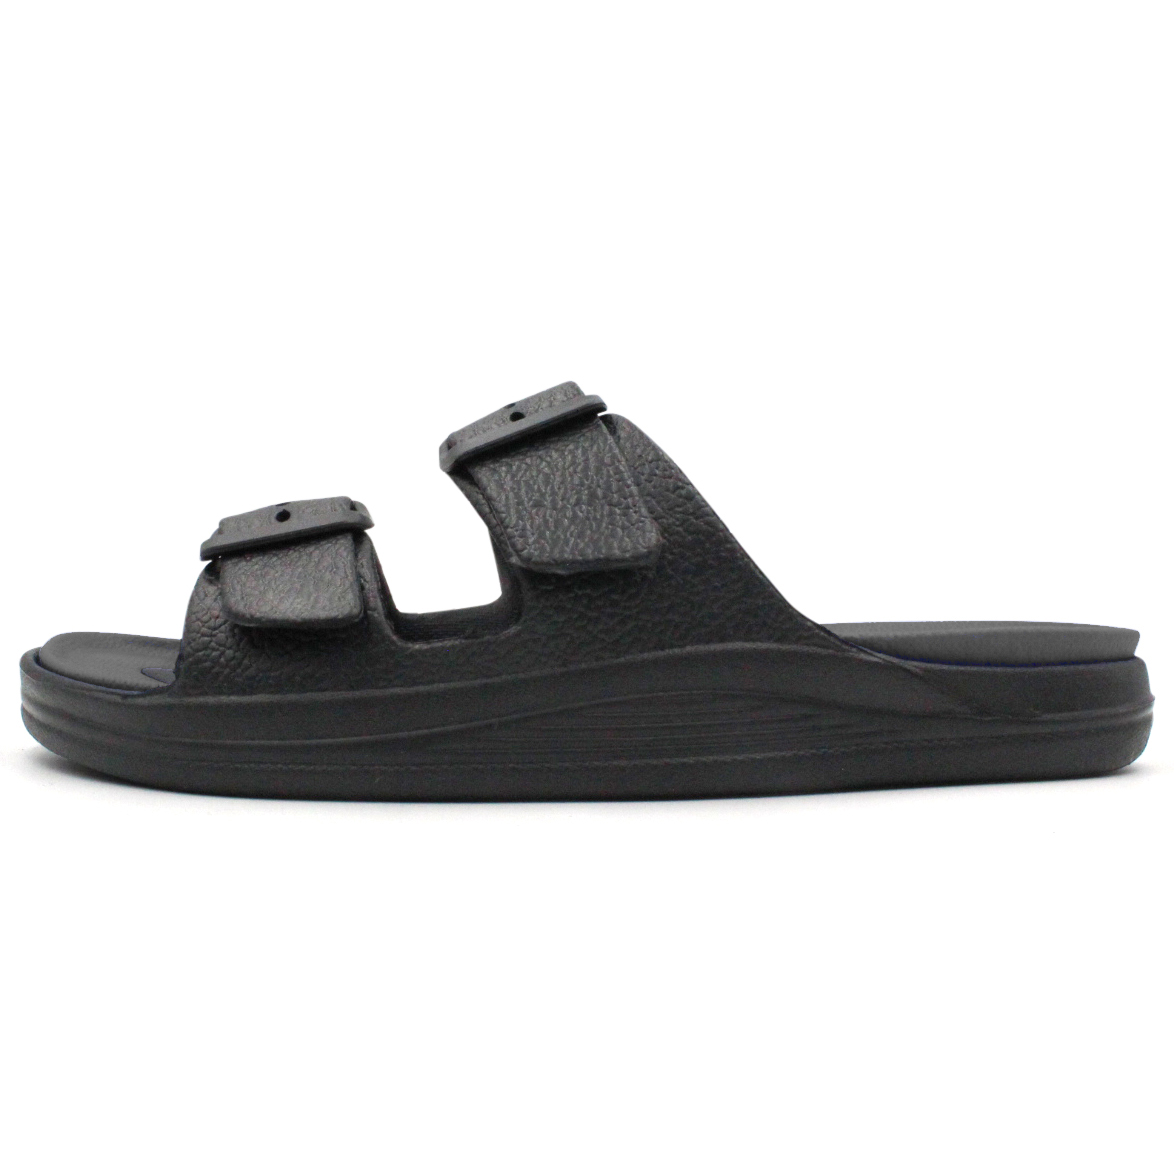 Men's Double Strap Sandal Adjustable Buckle Slide Outdoor Waterproof ...